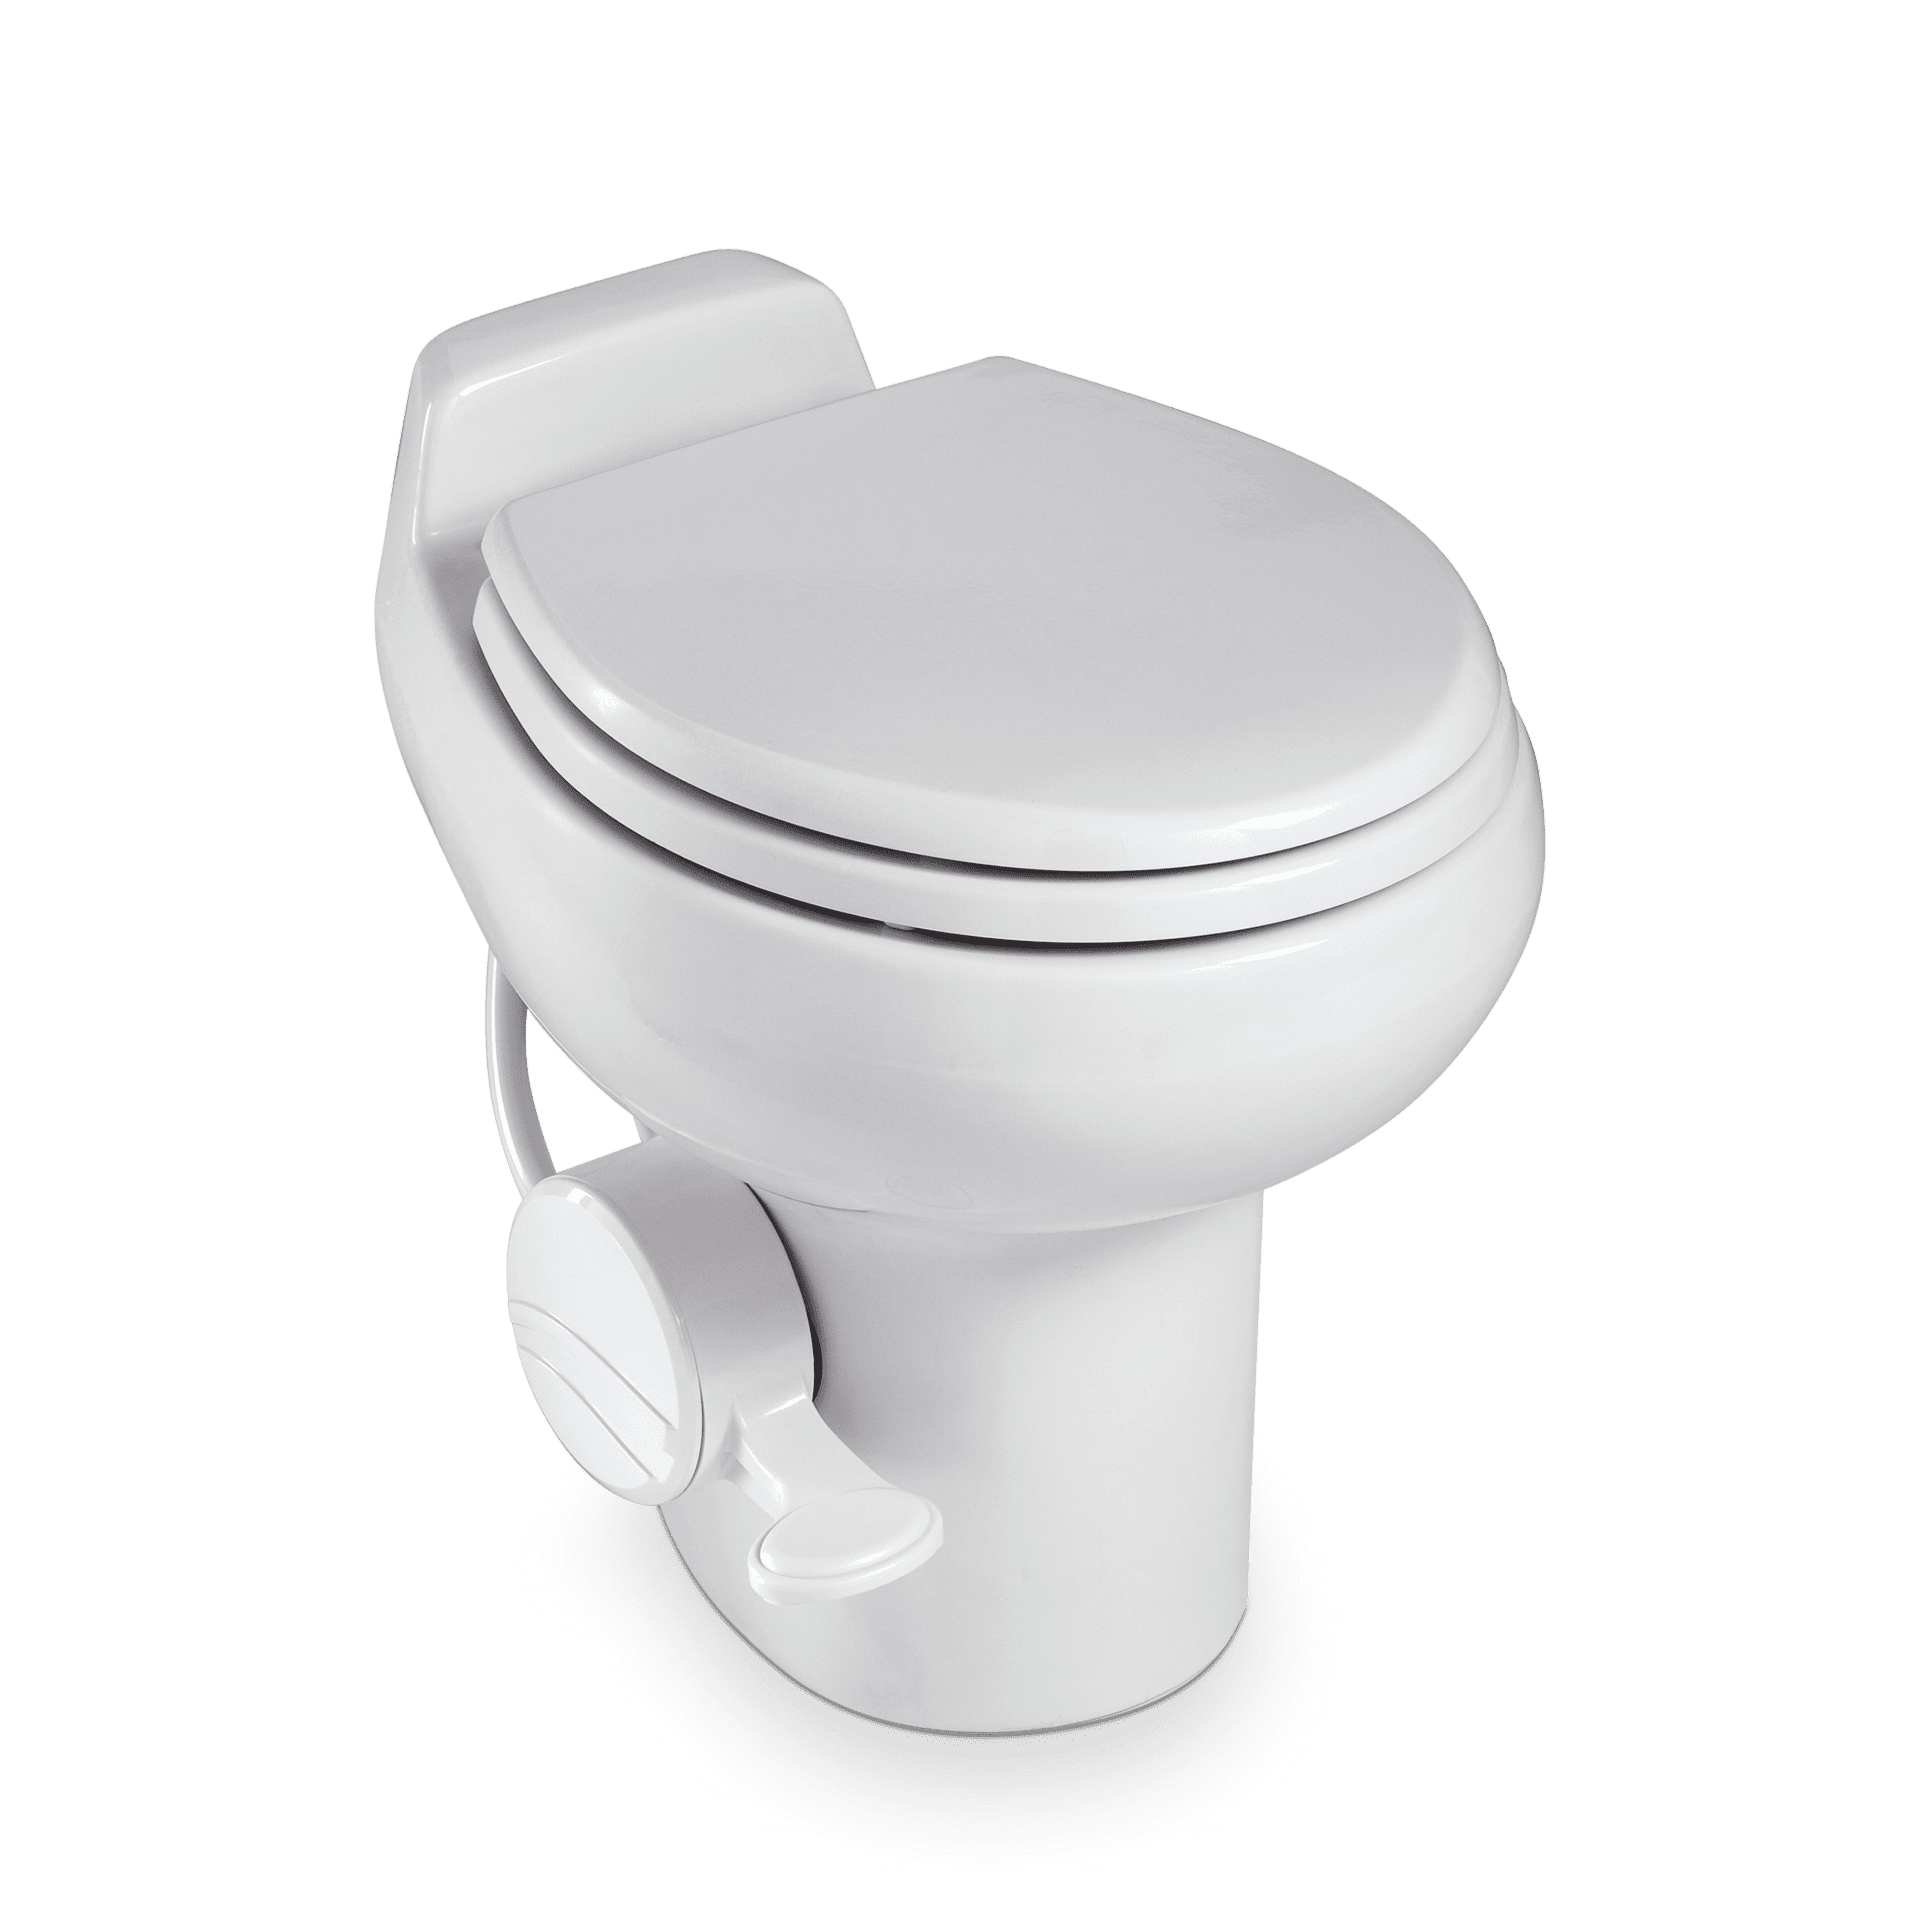 Dometic 300 toilet - Winnebago Owners Online Community